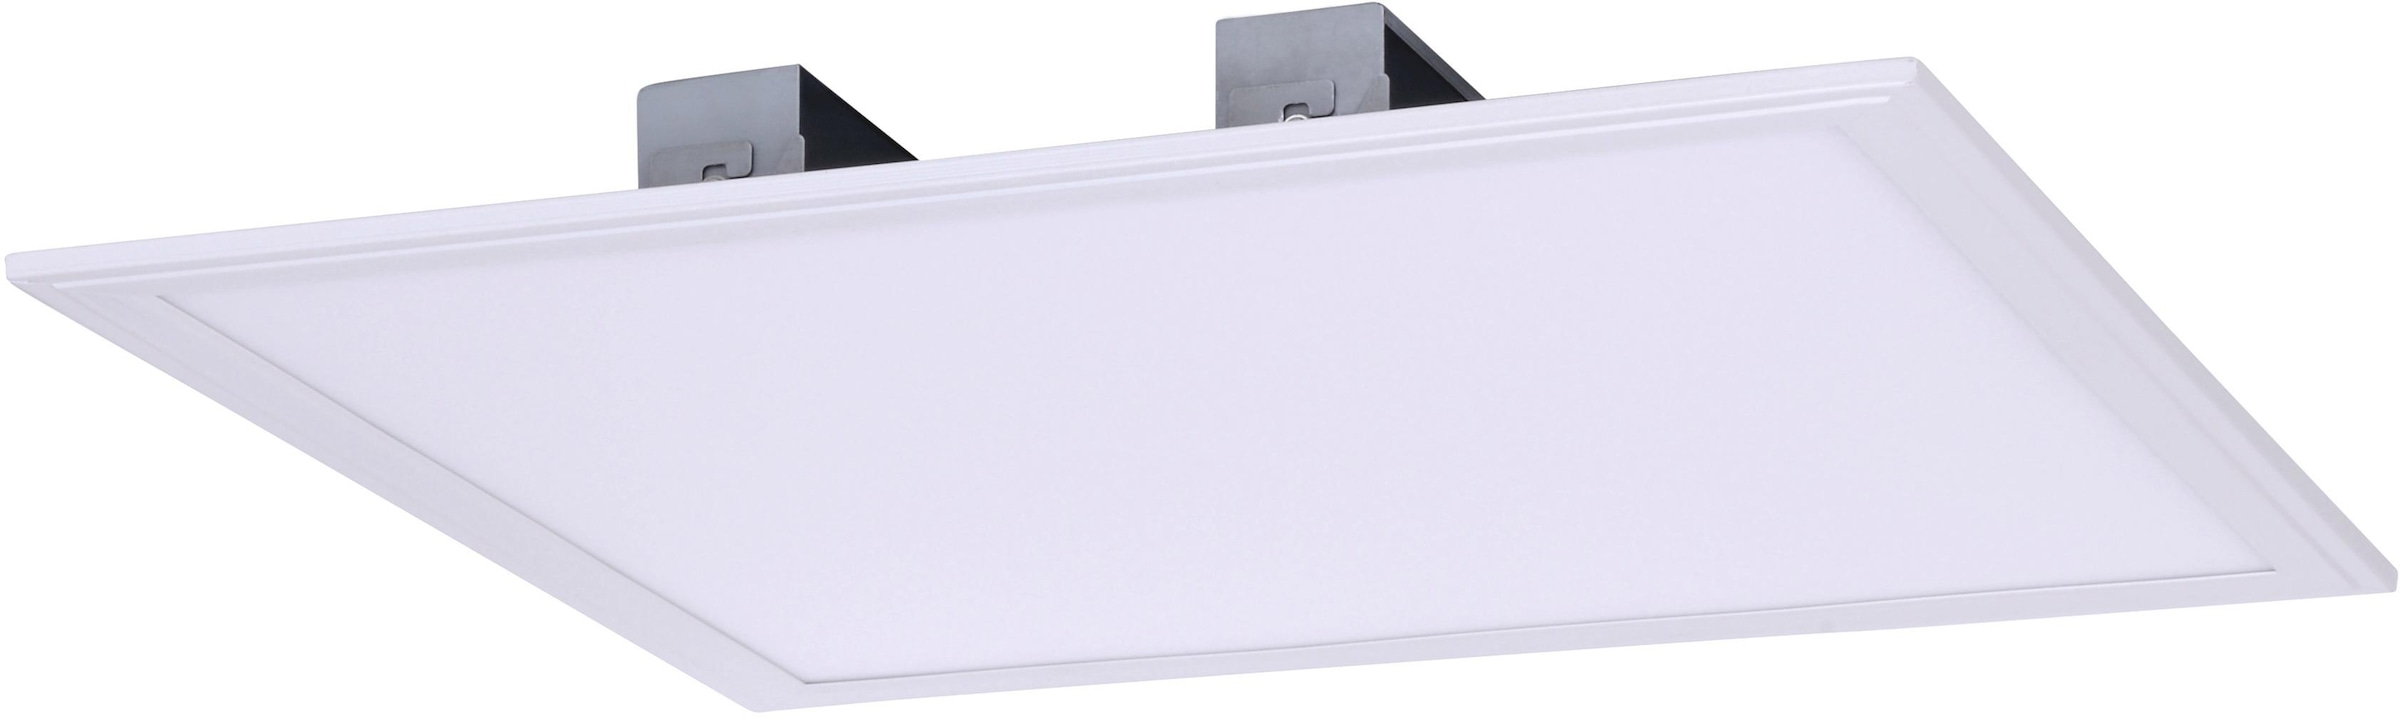 LED näve Aufbaupanel, bei LED incl. »PANEL«, Treiber, F, Energieeffizienz: weiß OTTO Panel online kaufen